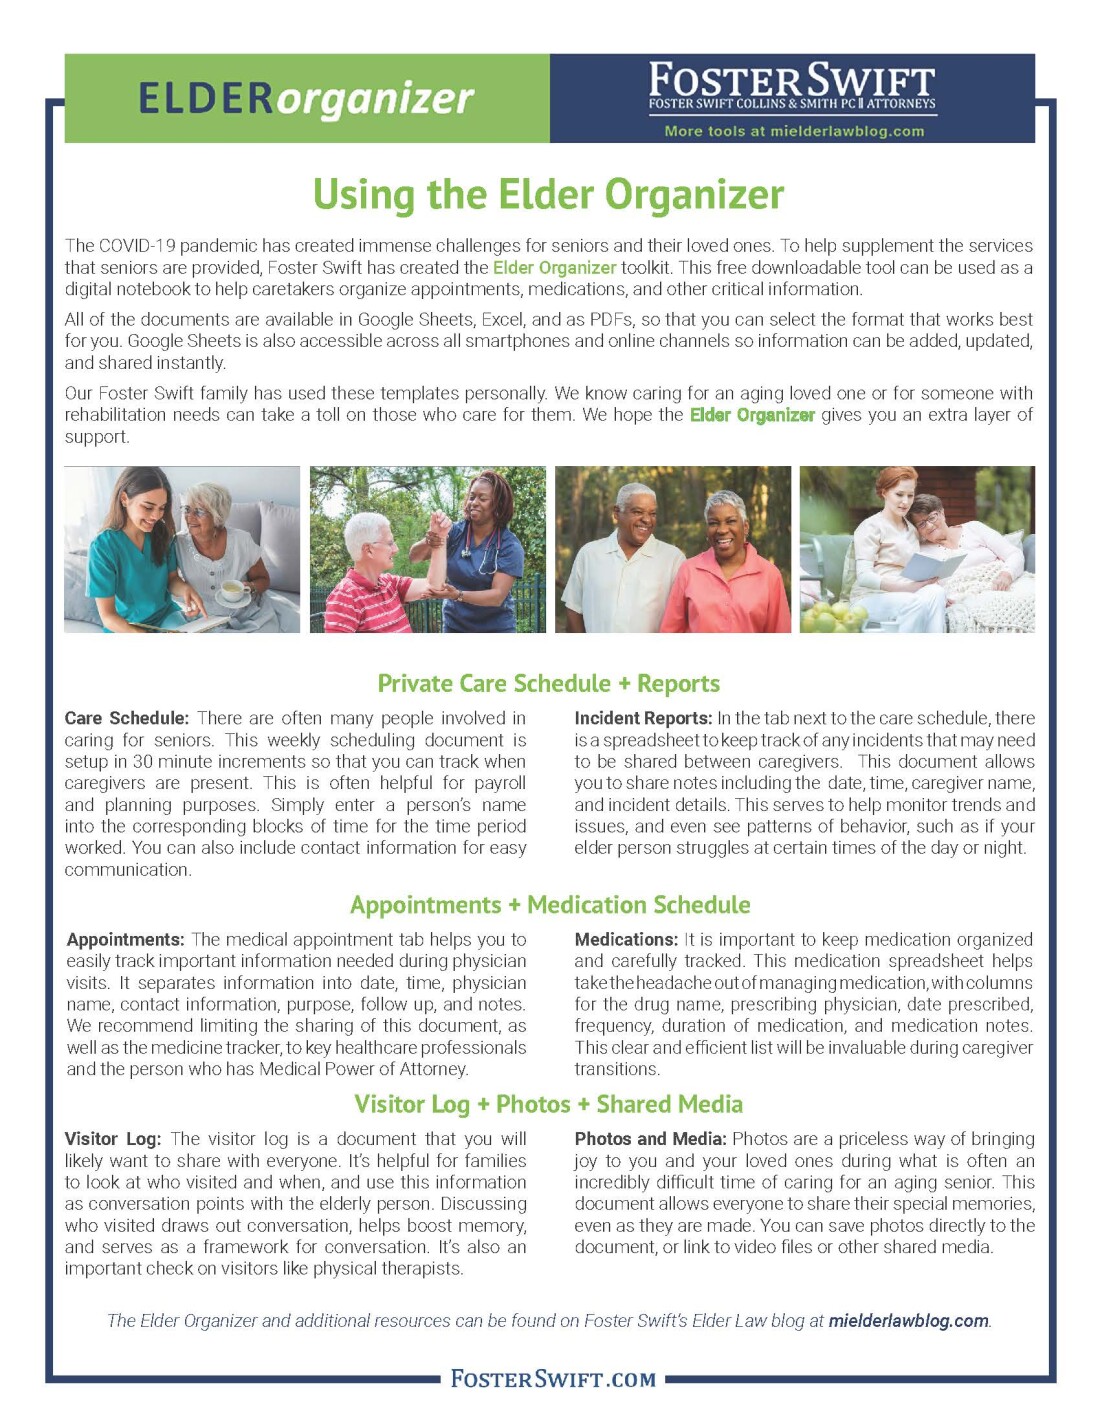 How to Use Elder Organizer